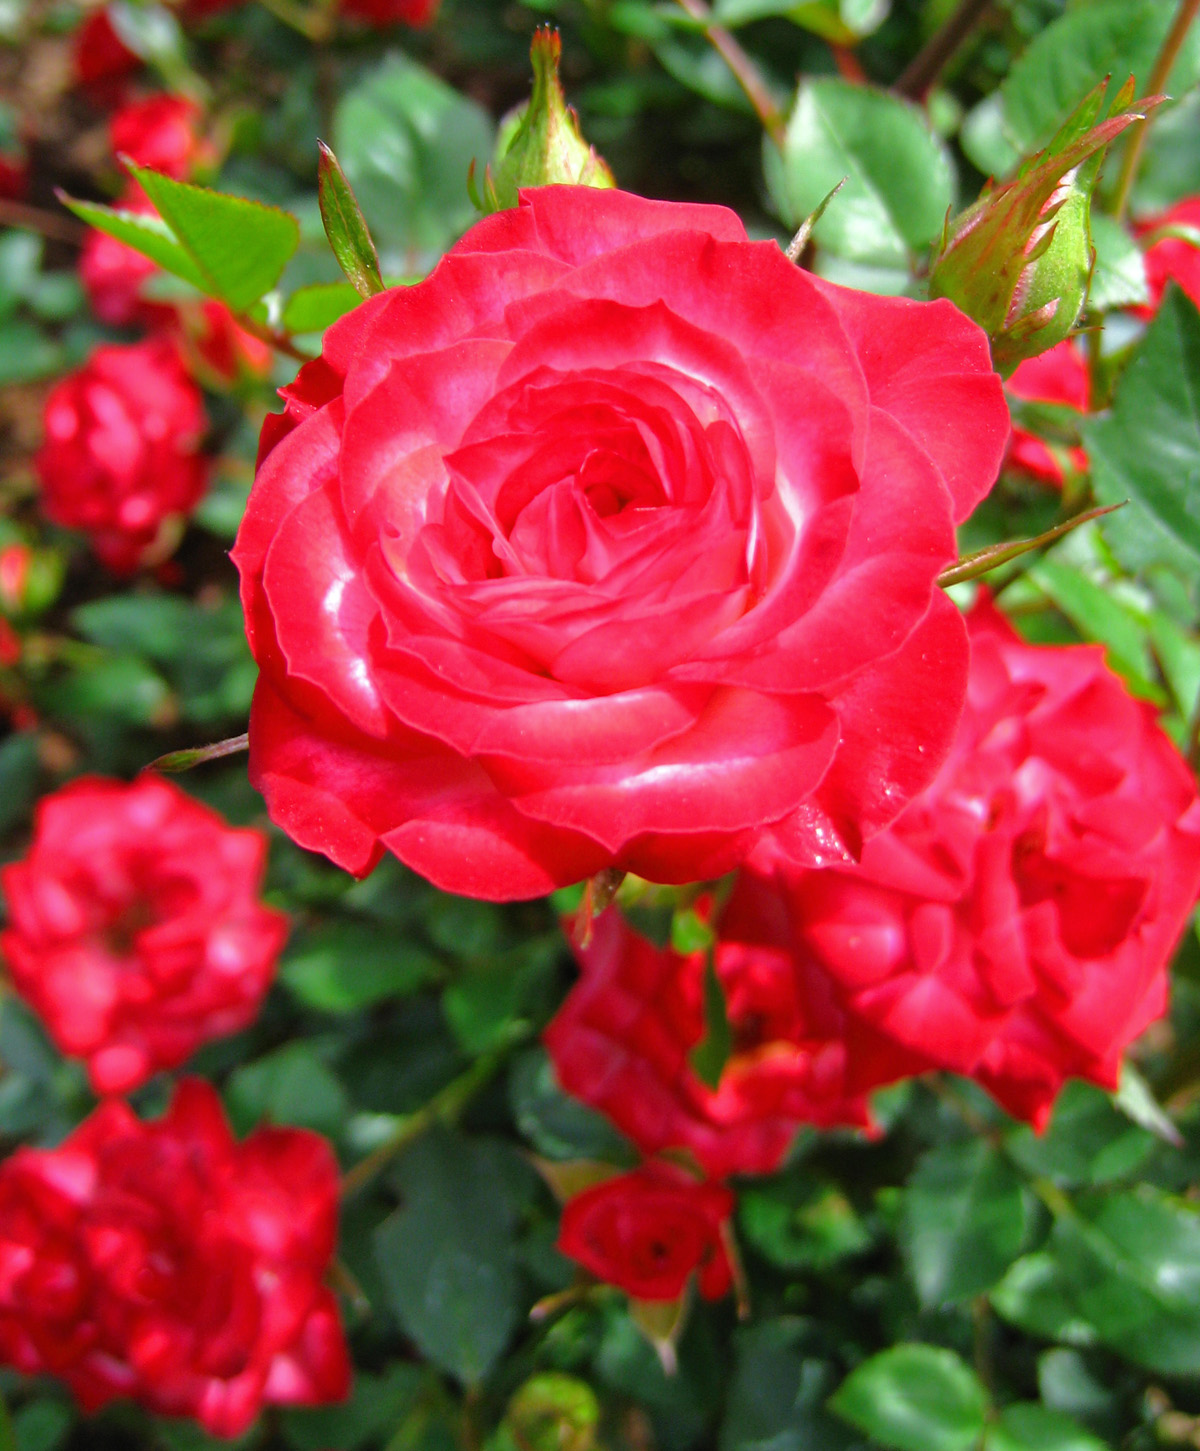 [red+roses.jpg]